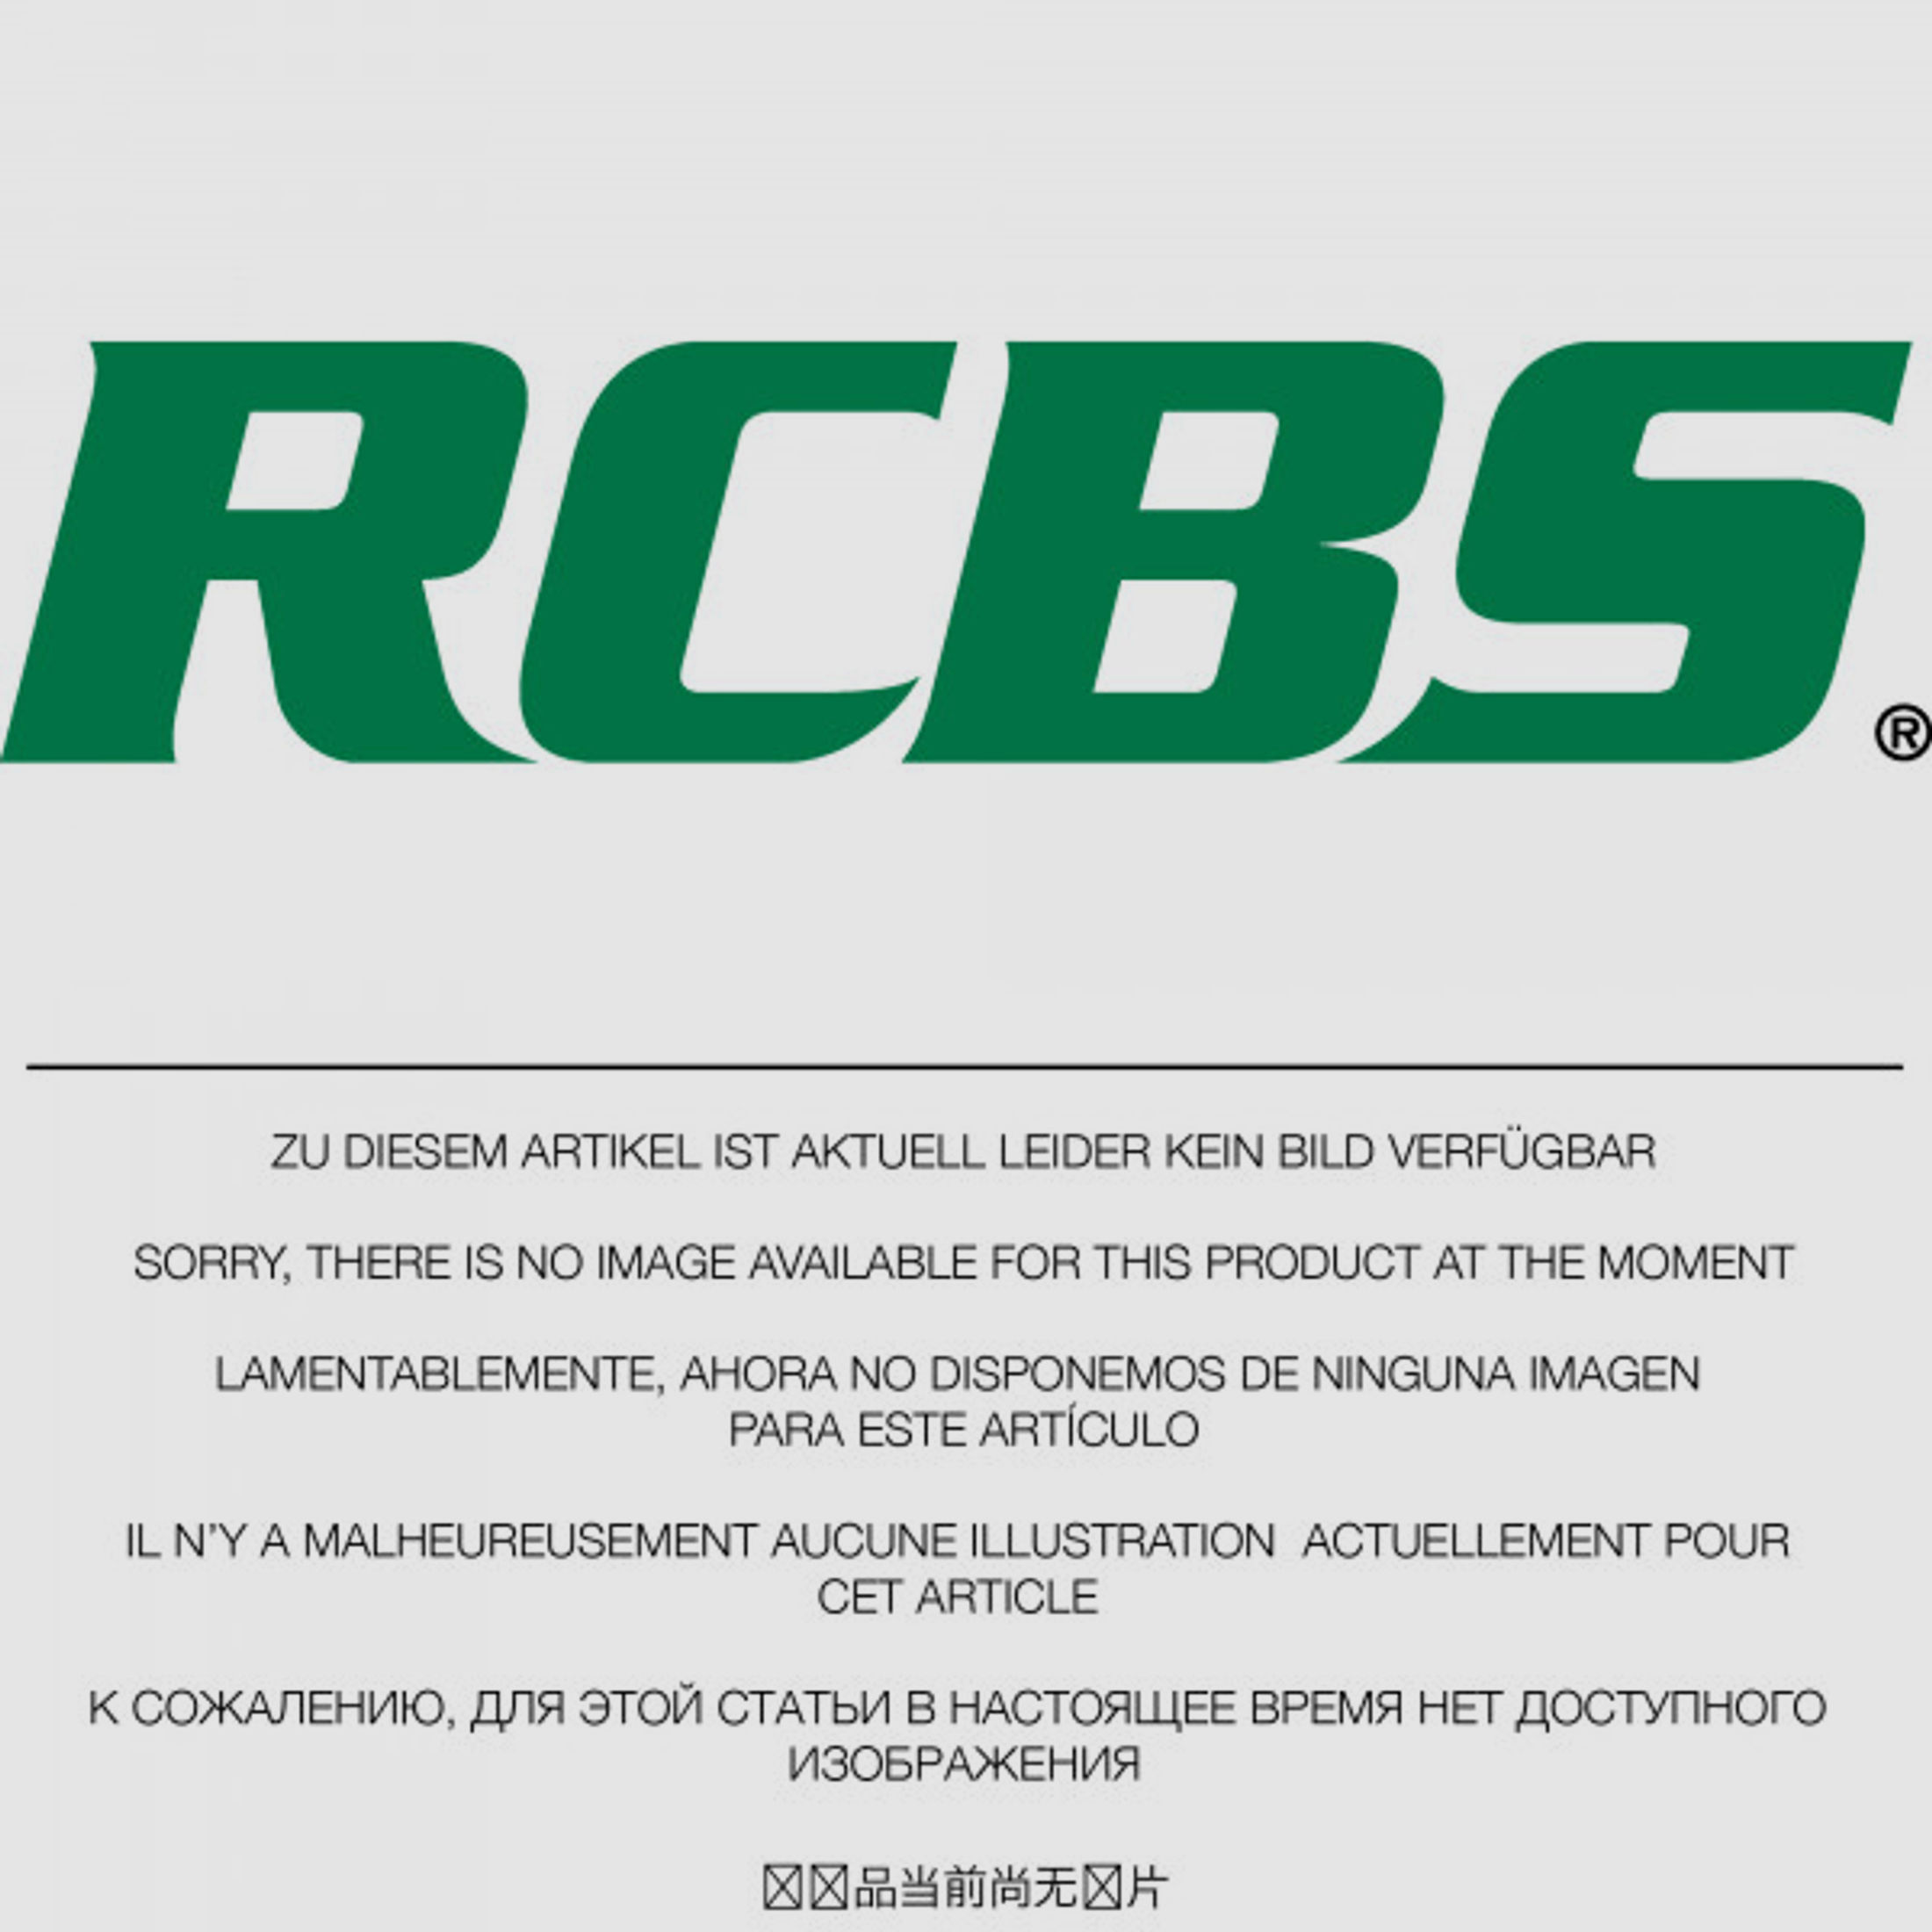 RCBS Lube-A-Matic Top Punch Geschoss Setzstempel Nr. 595 #85595